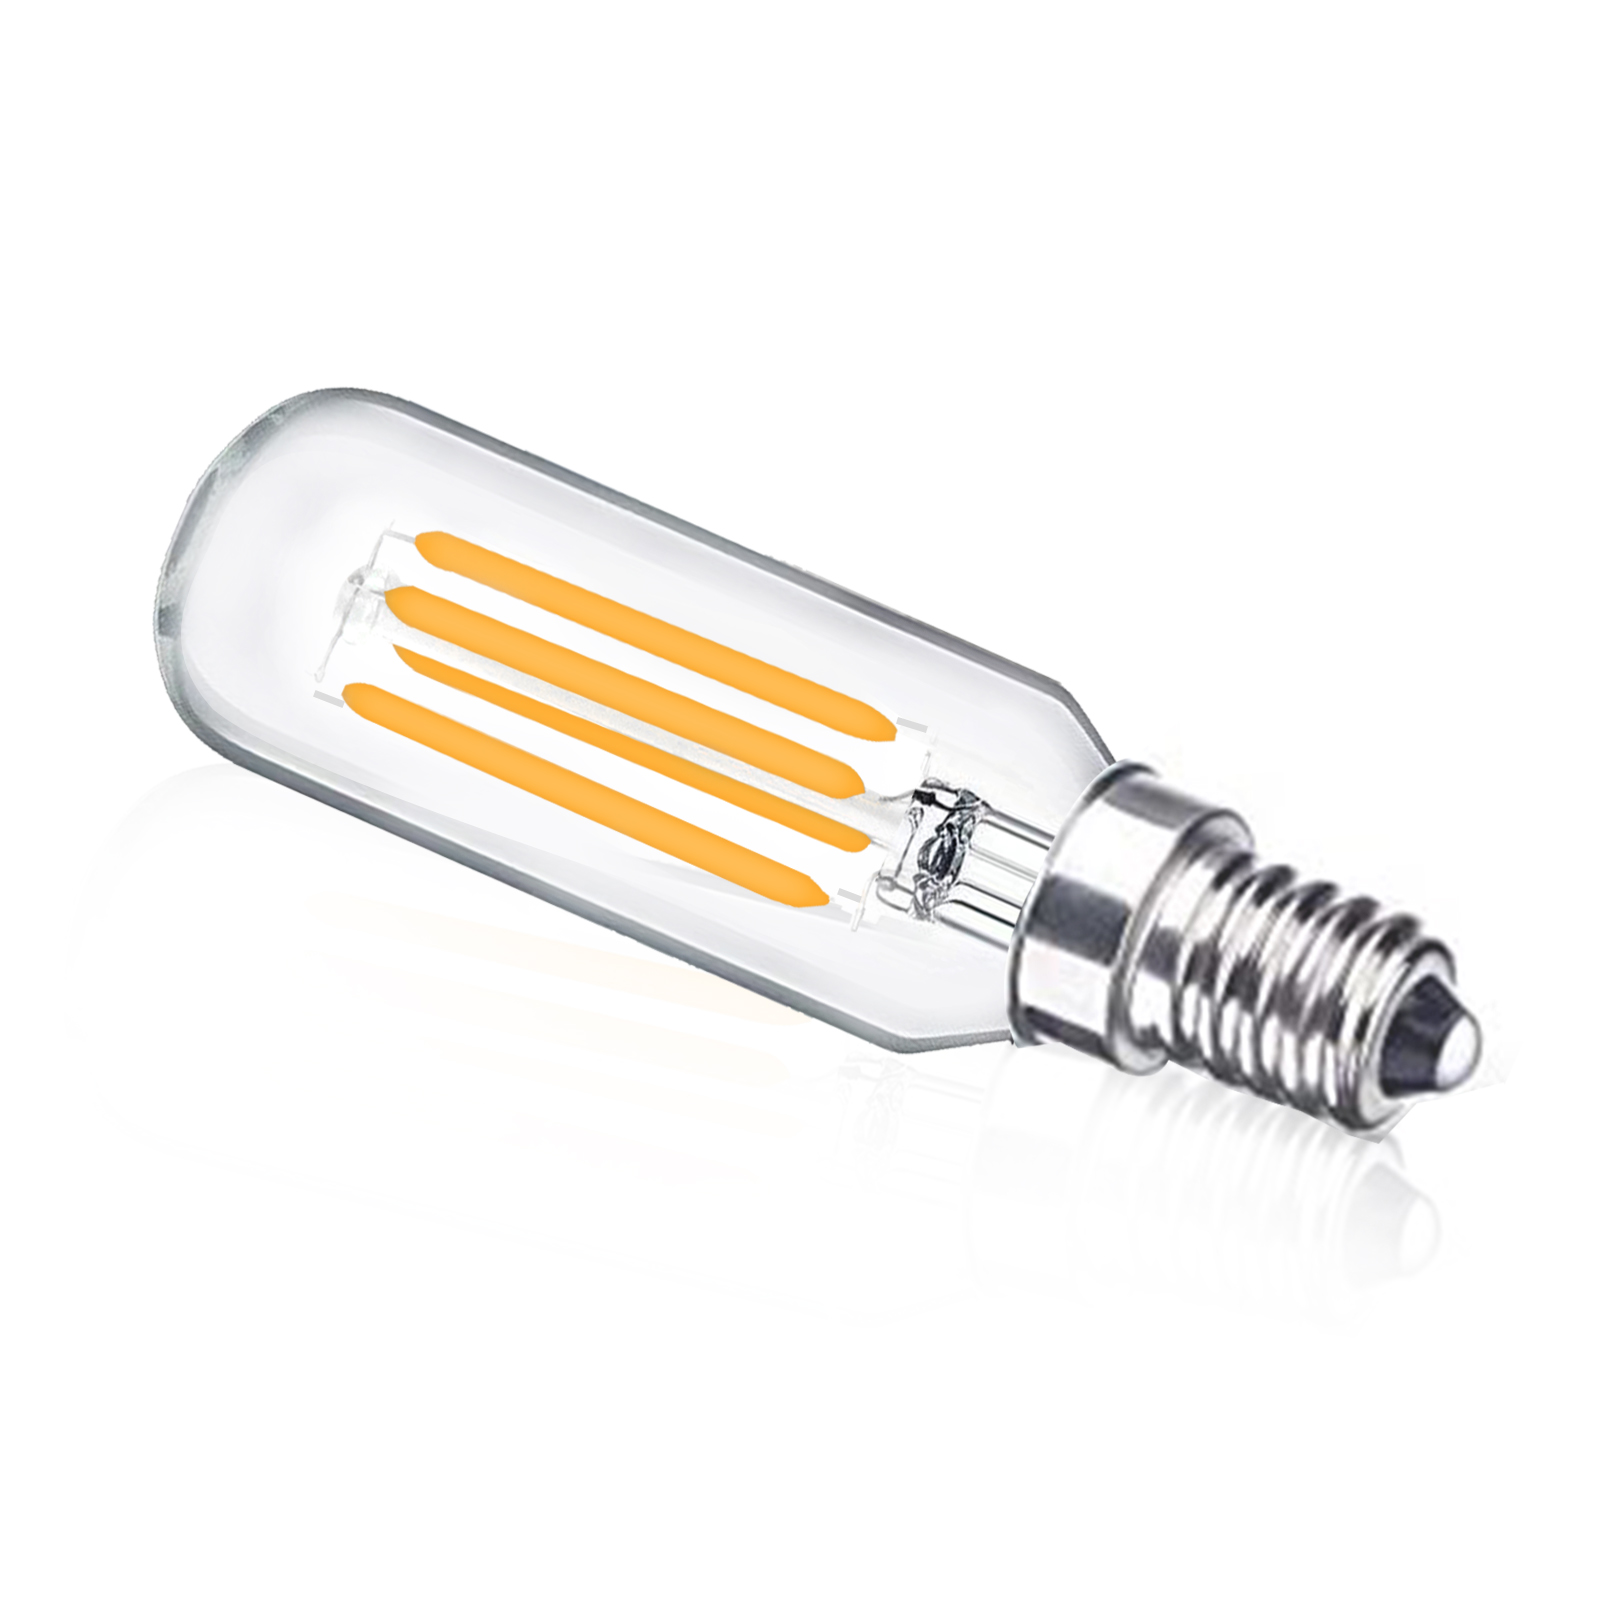 4W T25 E12 LED Vintage Light Bulb